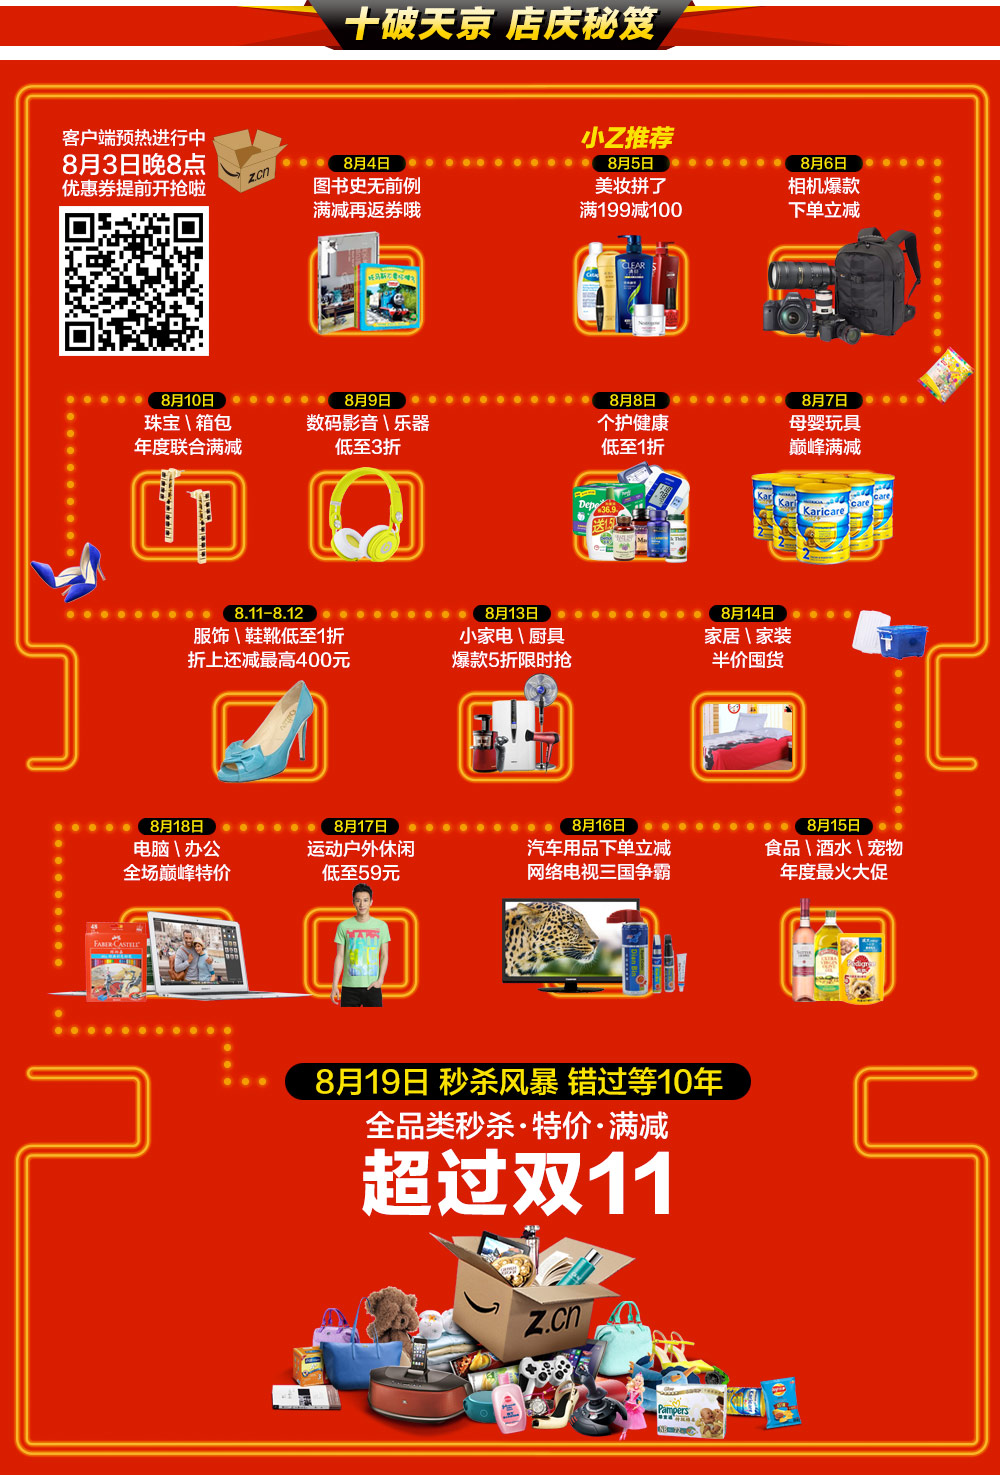 促销活动：亚马逊中国 10周年店庆